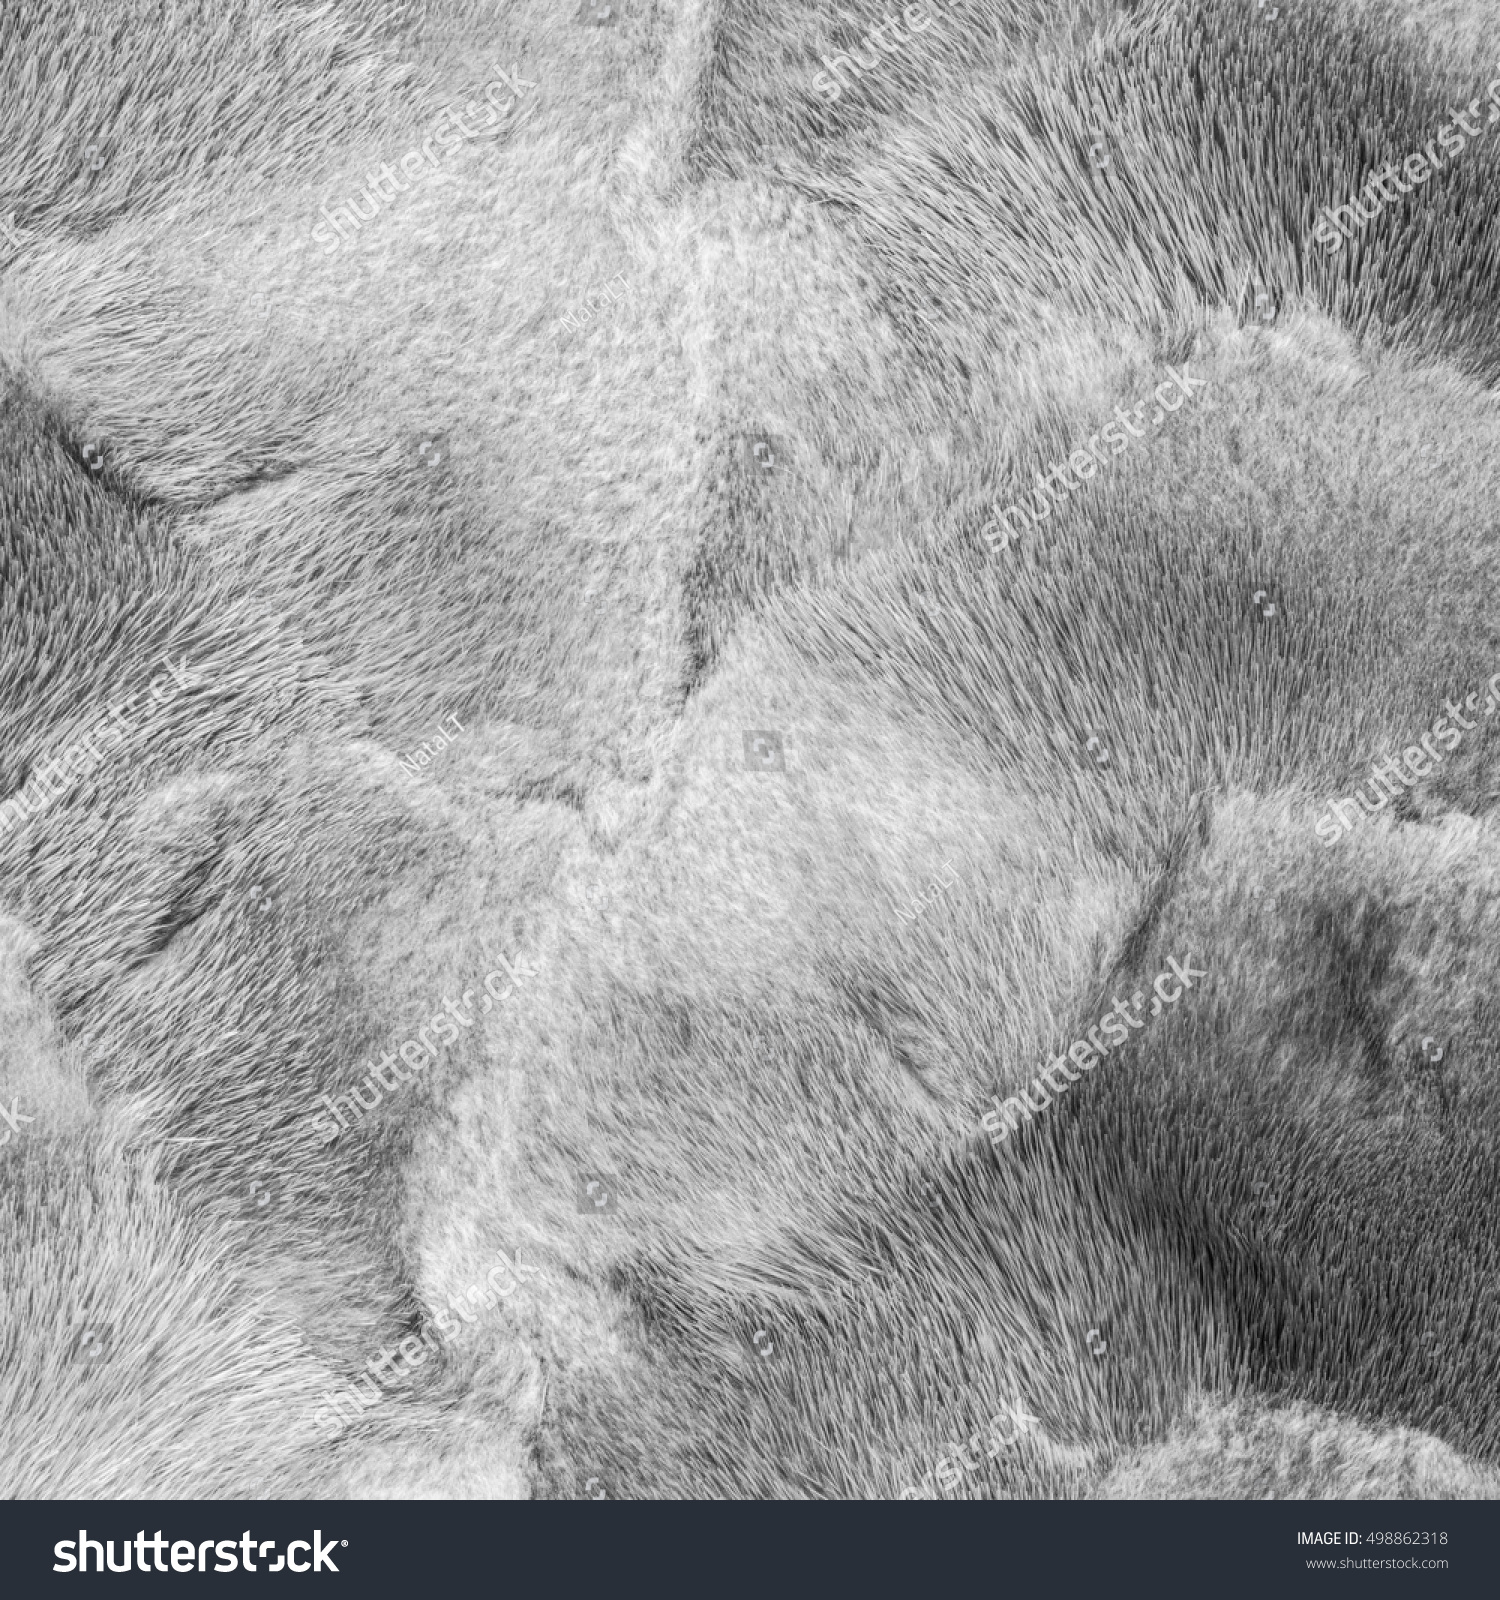 Natural Light Gray Mink Fur Texture Stock Photo 498862318 - Shutterstock